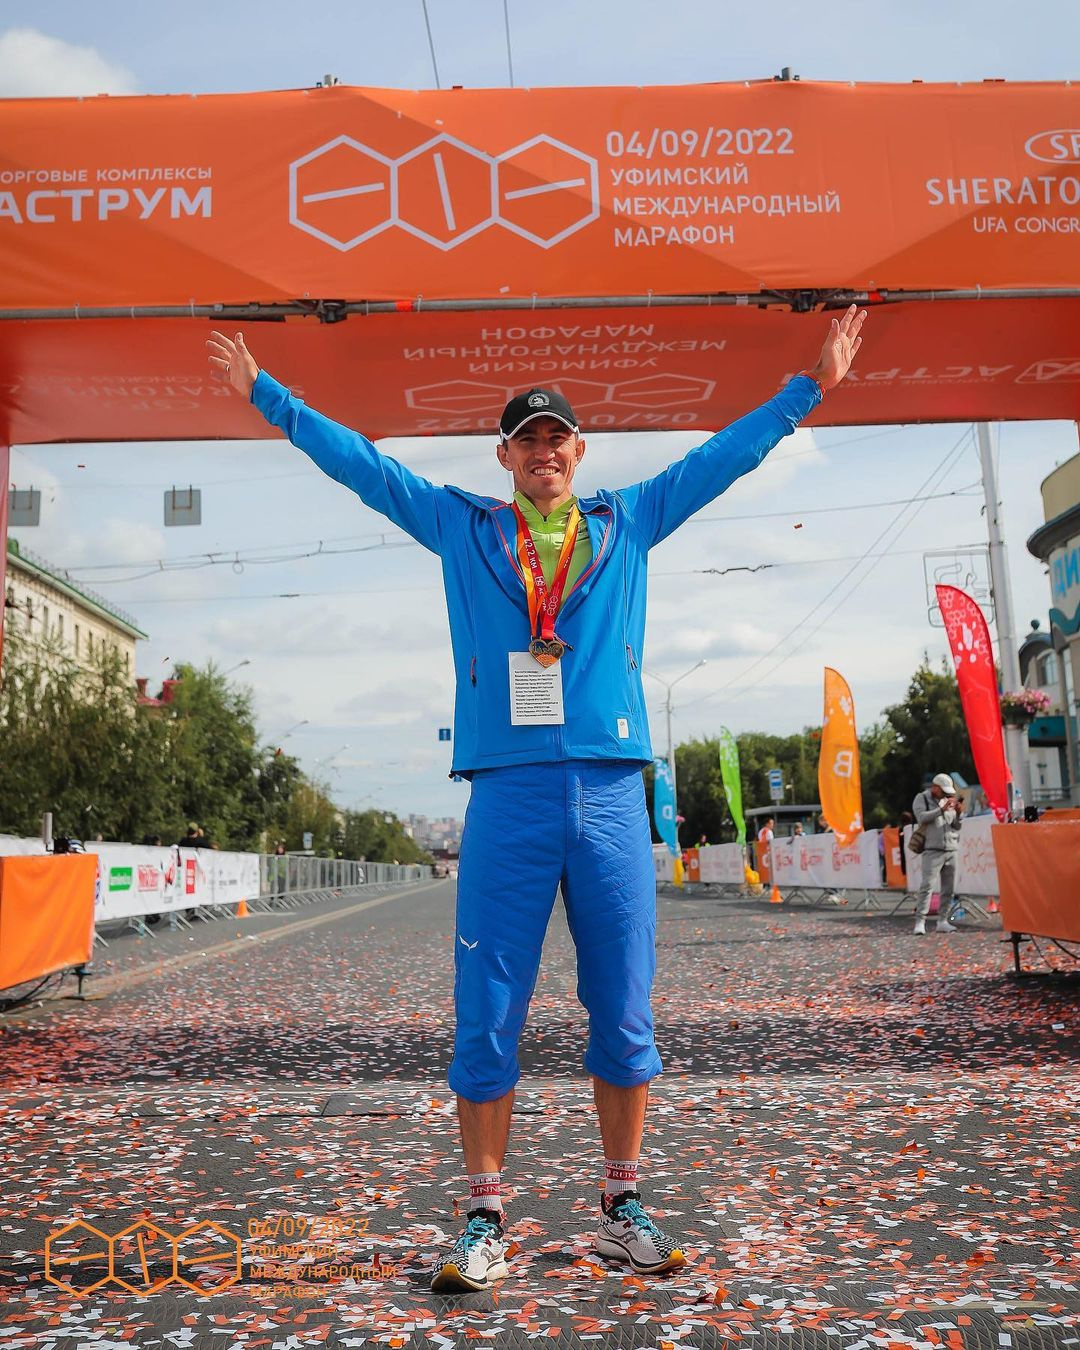 Владислав также принимал участие в марафонах в различных странах и возродил забег в Уфе